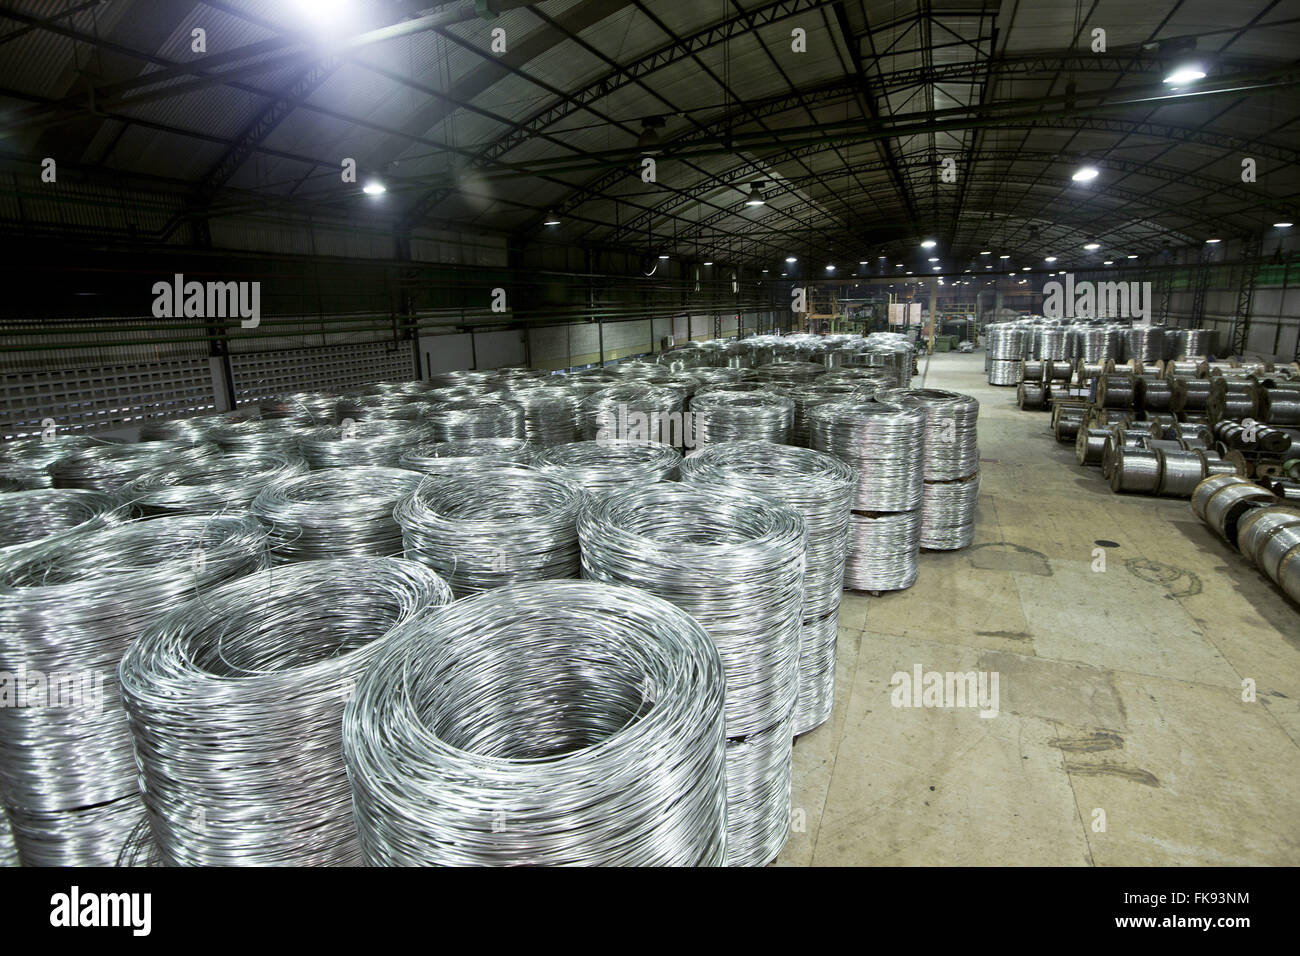 Câble aluminium rouleaux prêts à être emballés pour la distribution Banque D'Images